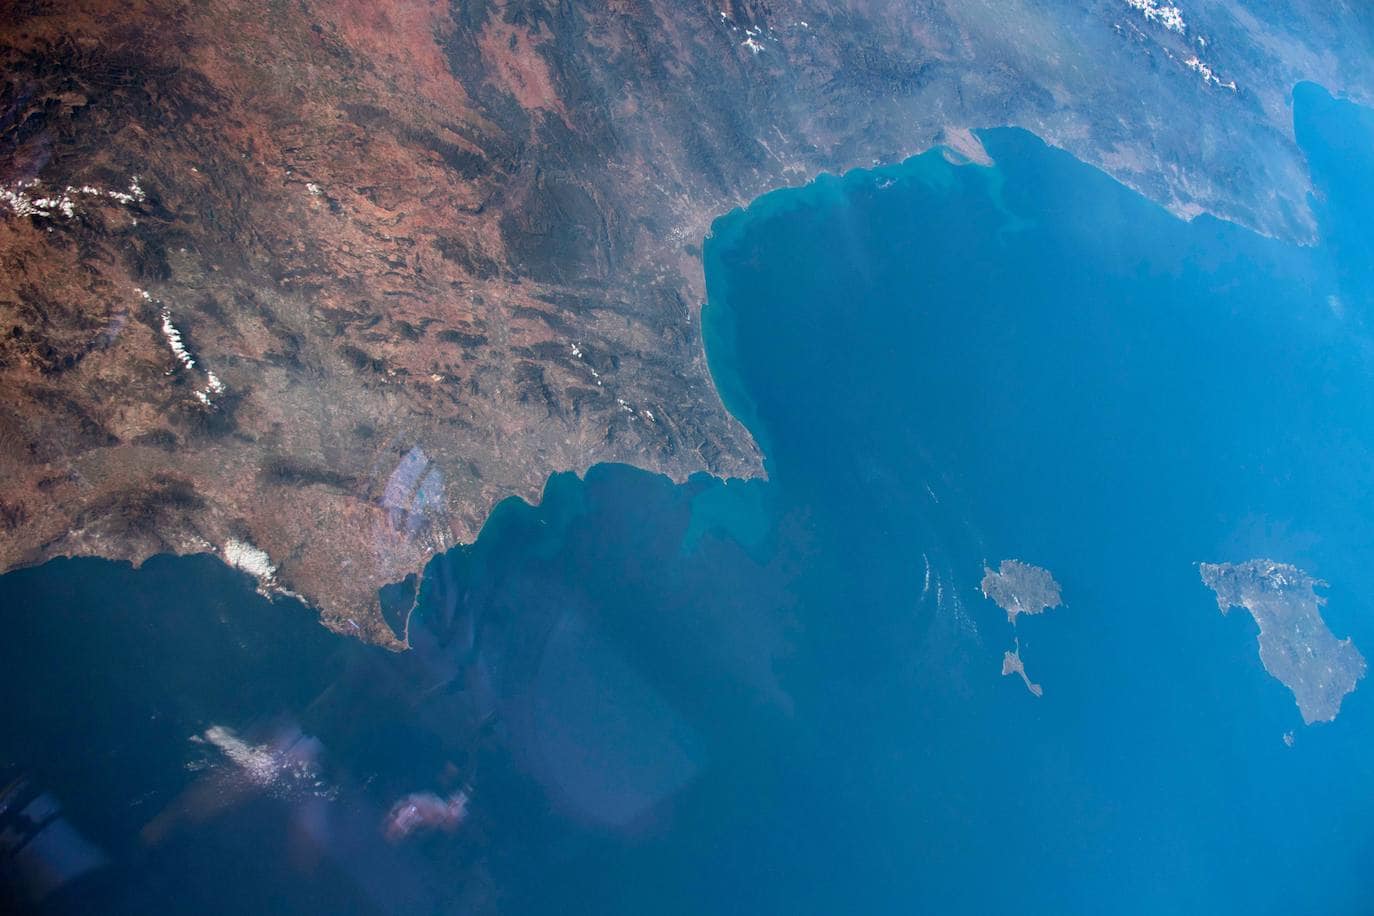 Los astronautas de la Estación Espacial Internacional muestran unas imágenes con detalle excepcional gracias al ángulo oblicuo con el que se tomaron las fotos, que resalta el relieve. Costa mediterránea, en esta podemos ver perfectamente las islas de Mallorca, en primer plano, y Menorca.